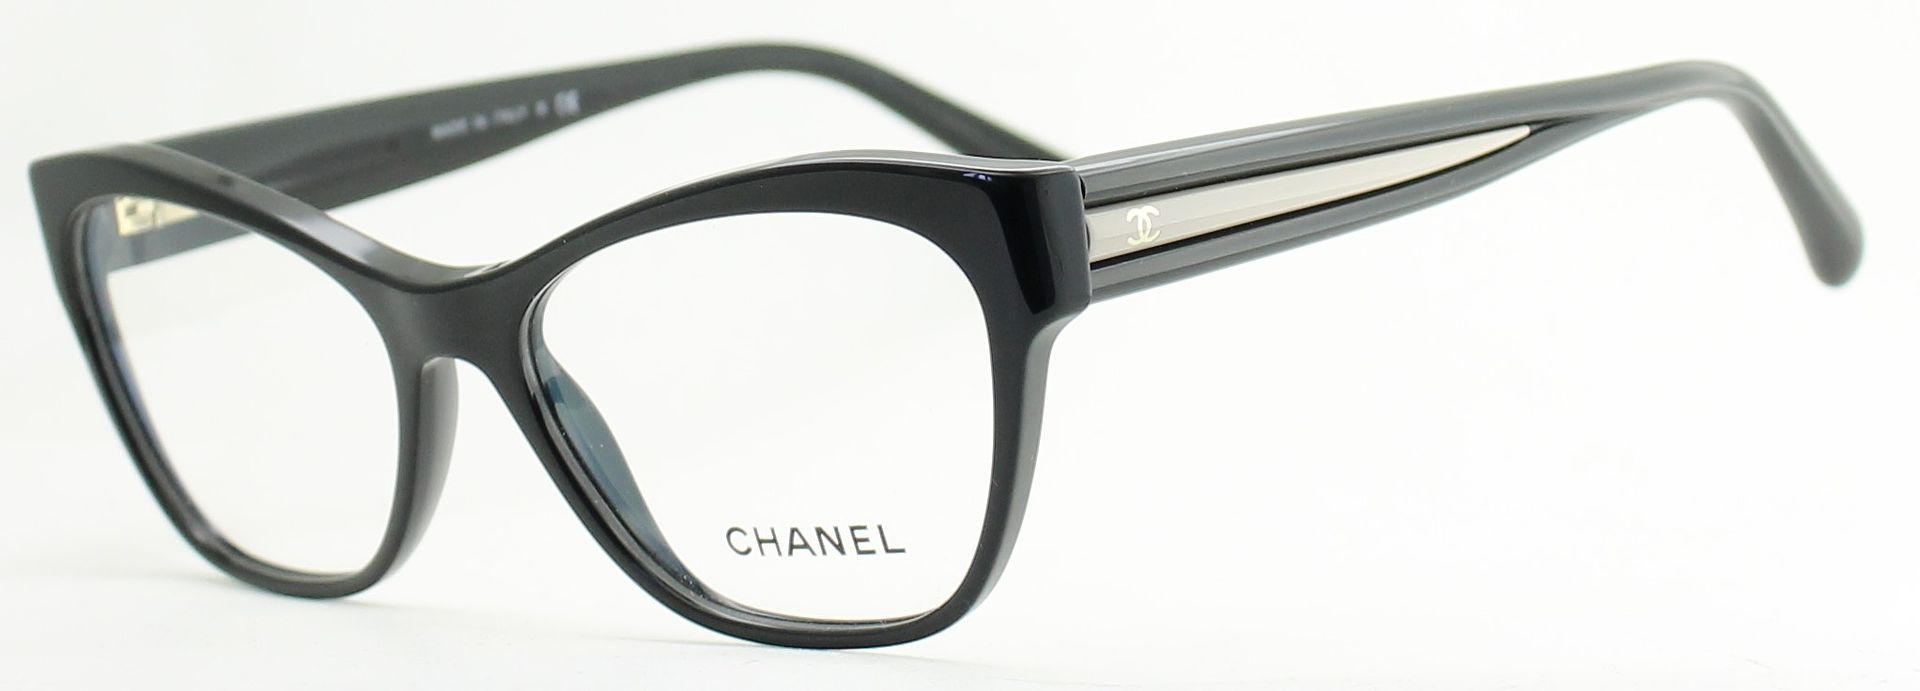 CHANEL 3307 943 Eyewear FRAMES Eyeglasses RX Optical Glasses New BNIB -  Italy - GGV Eyewear